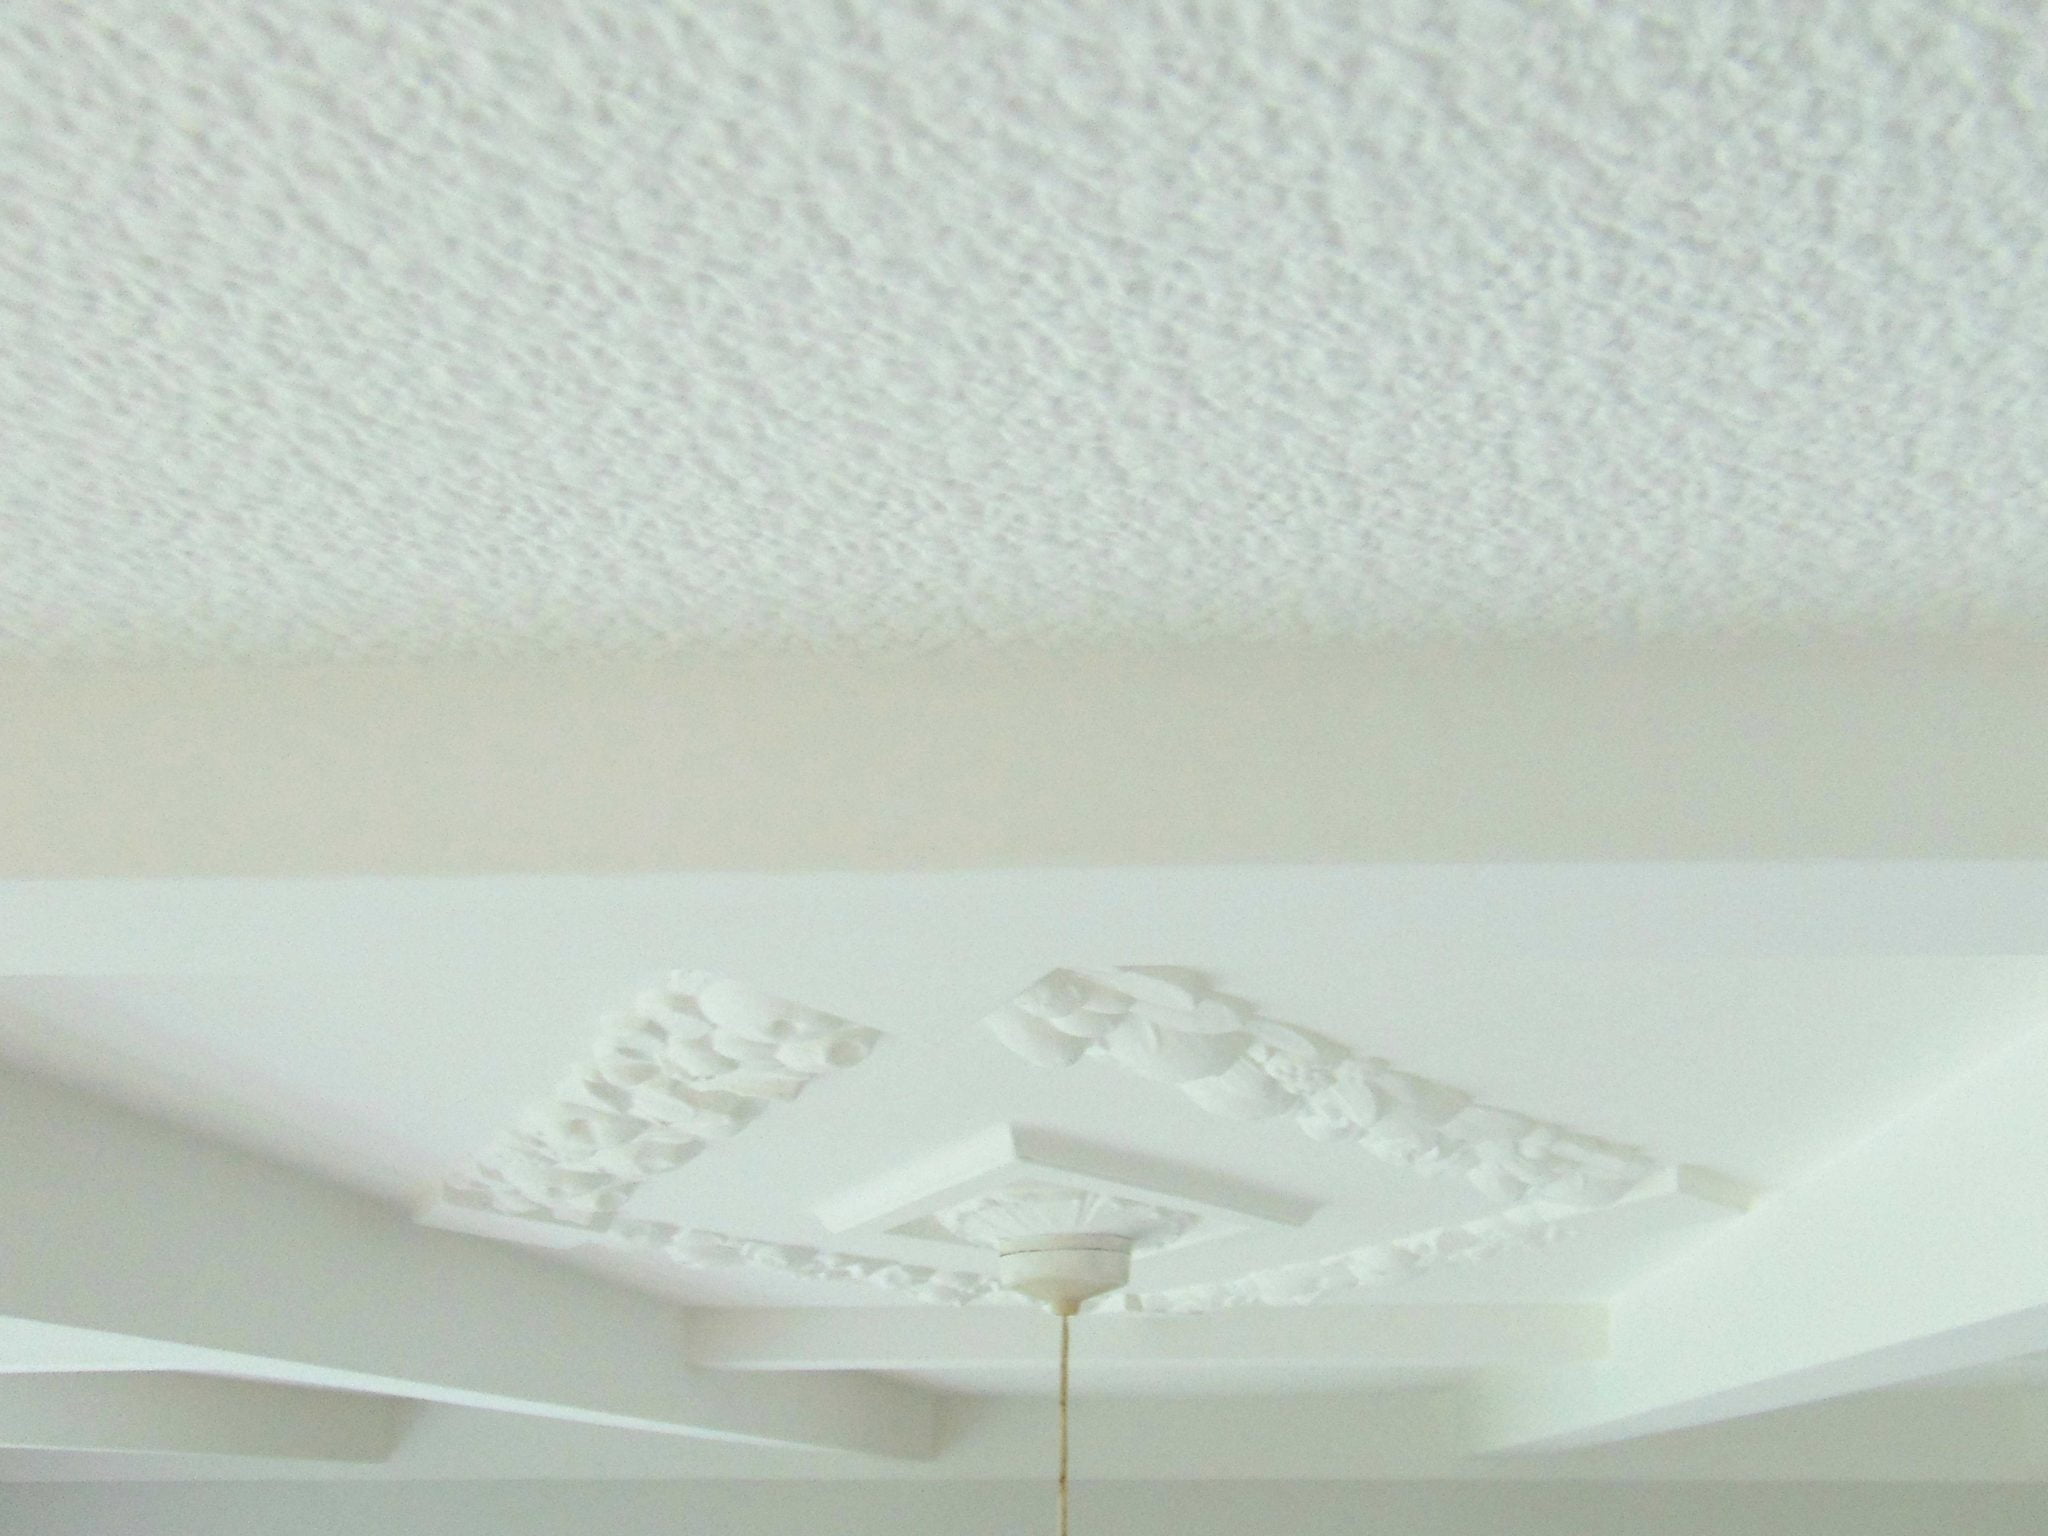 interior remuera villa textured ceiling painting